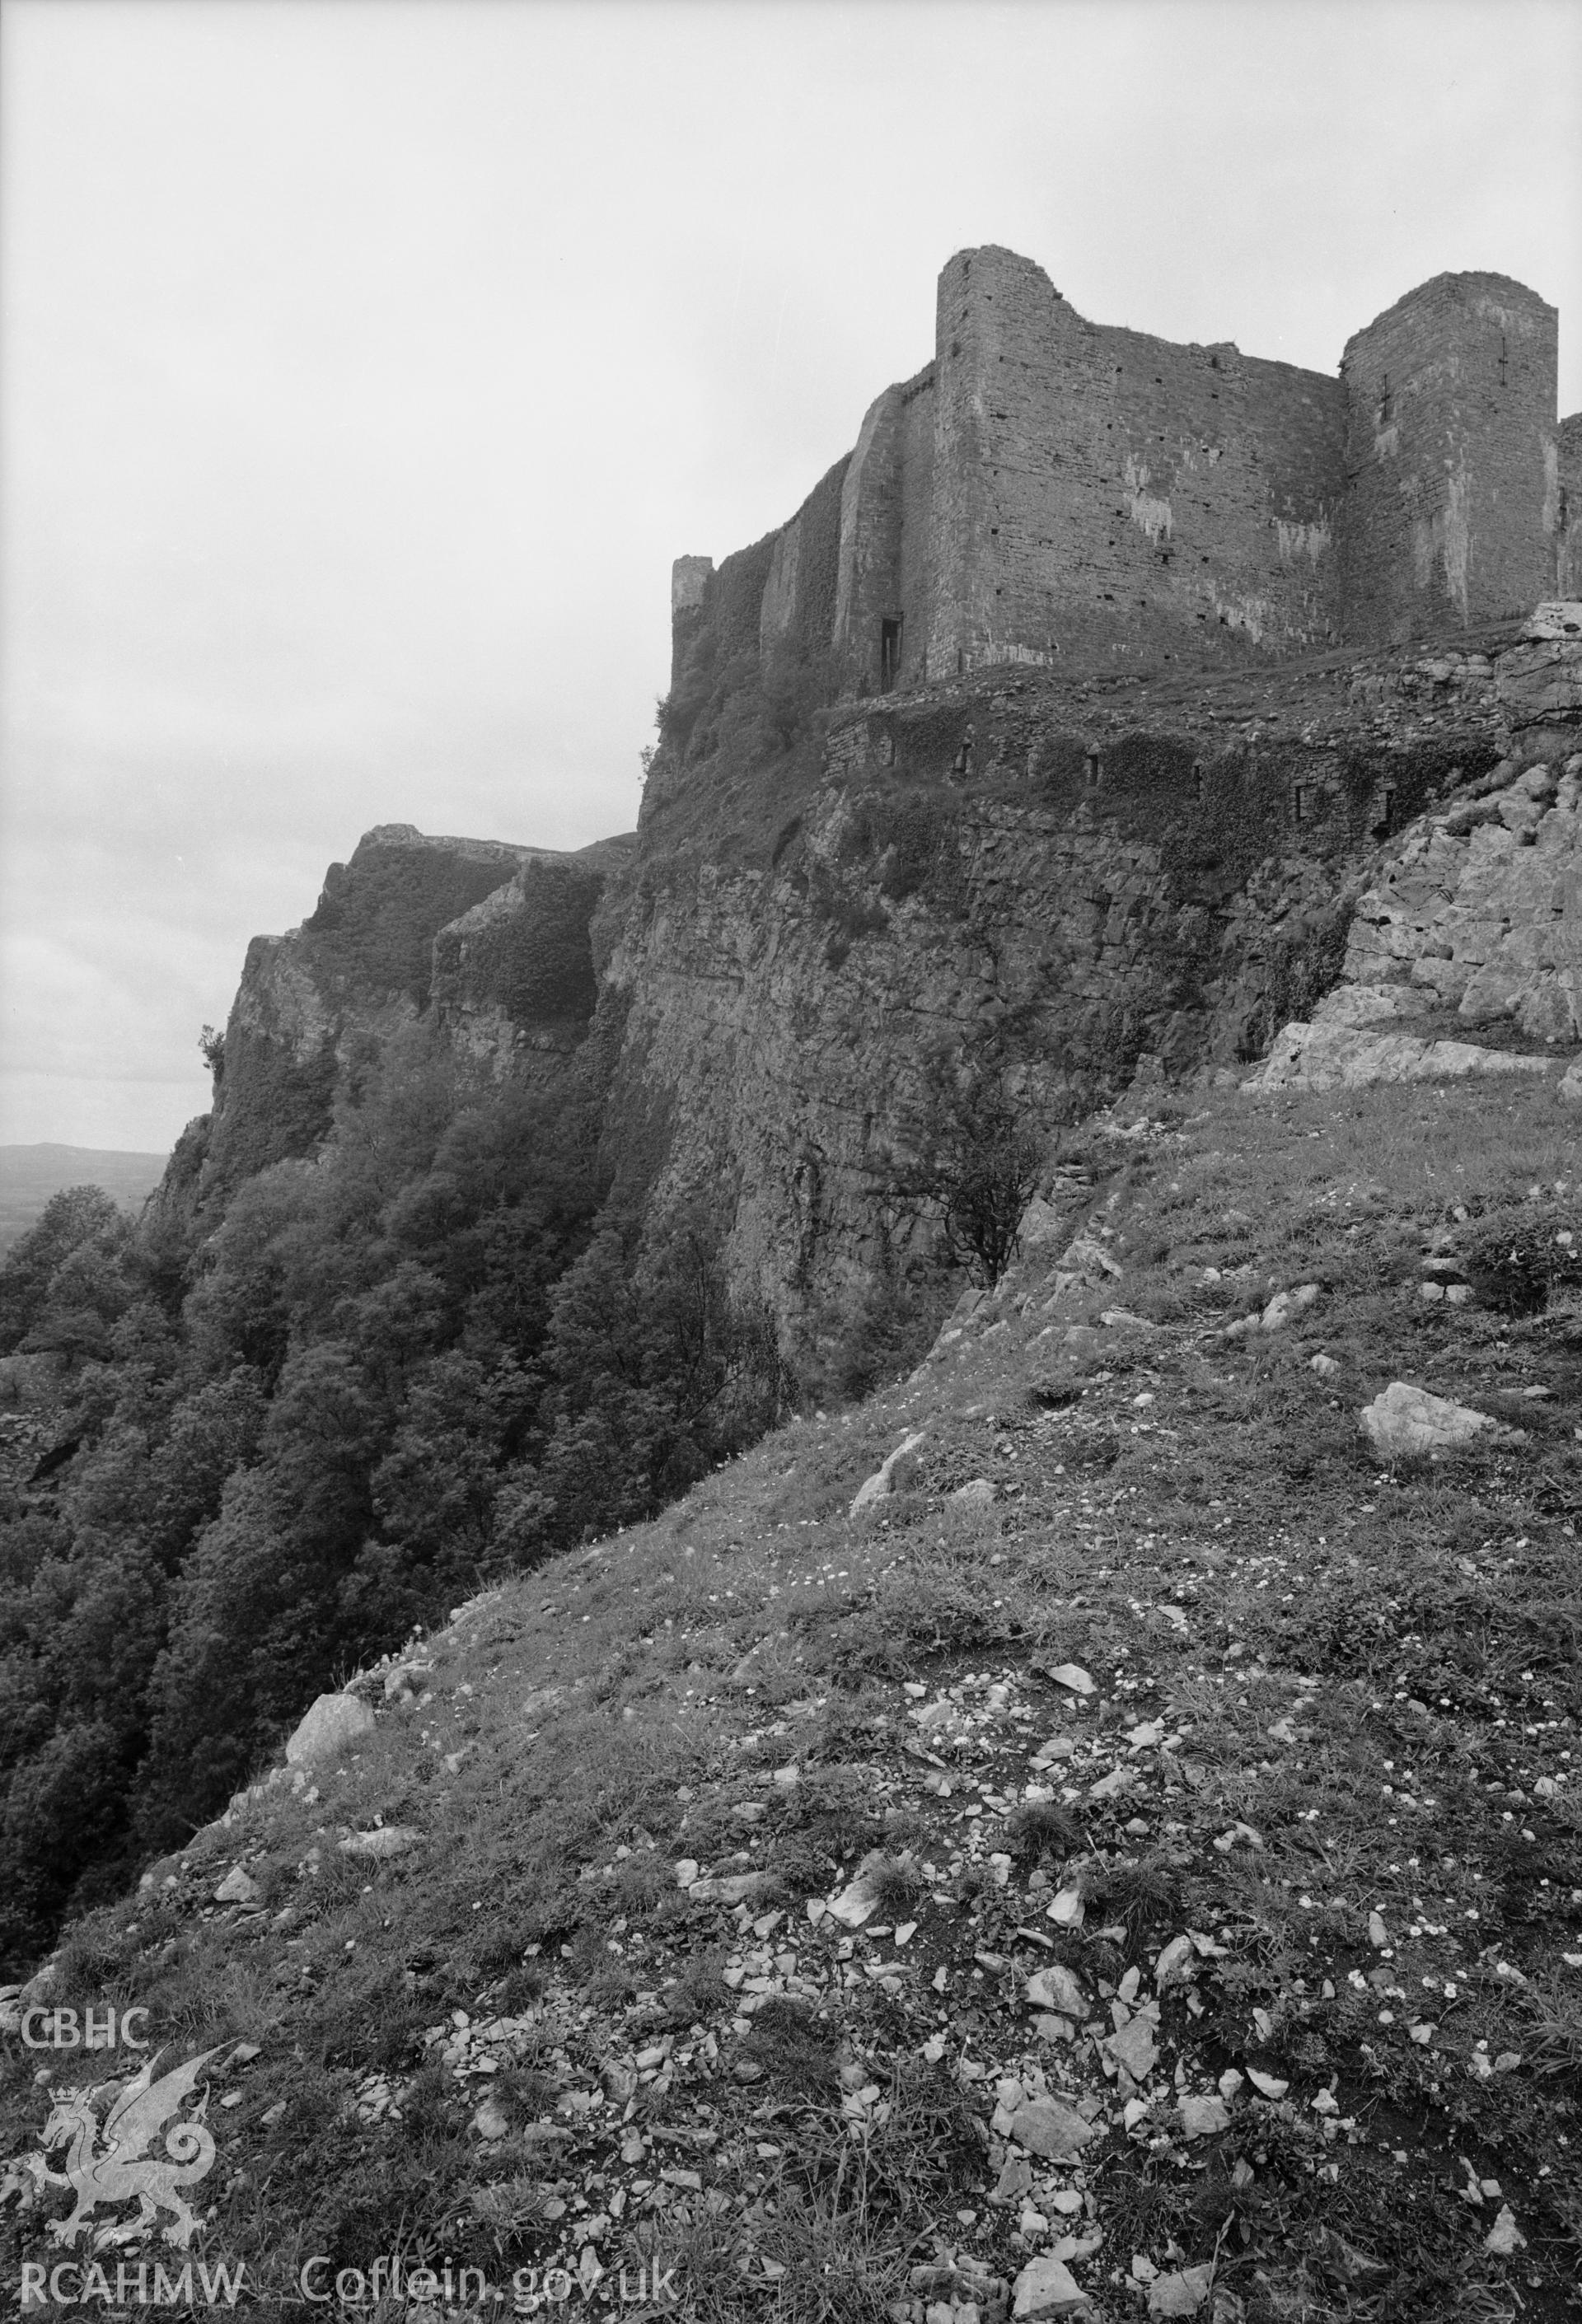 D.O.E photograph of Carreg Cennen Castle.